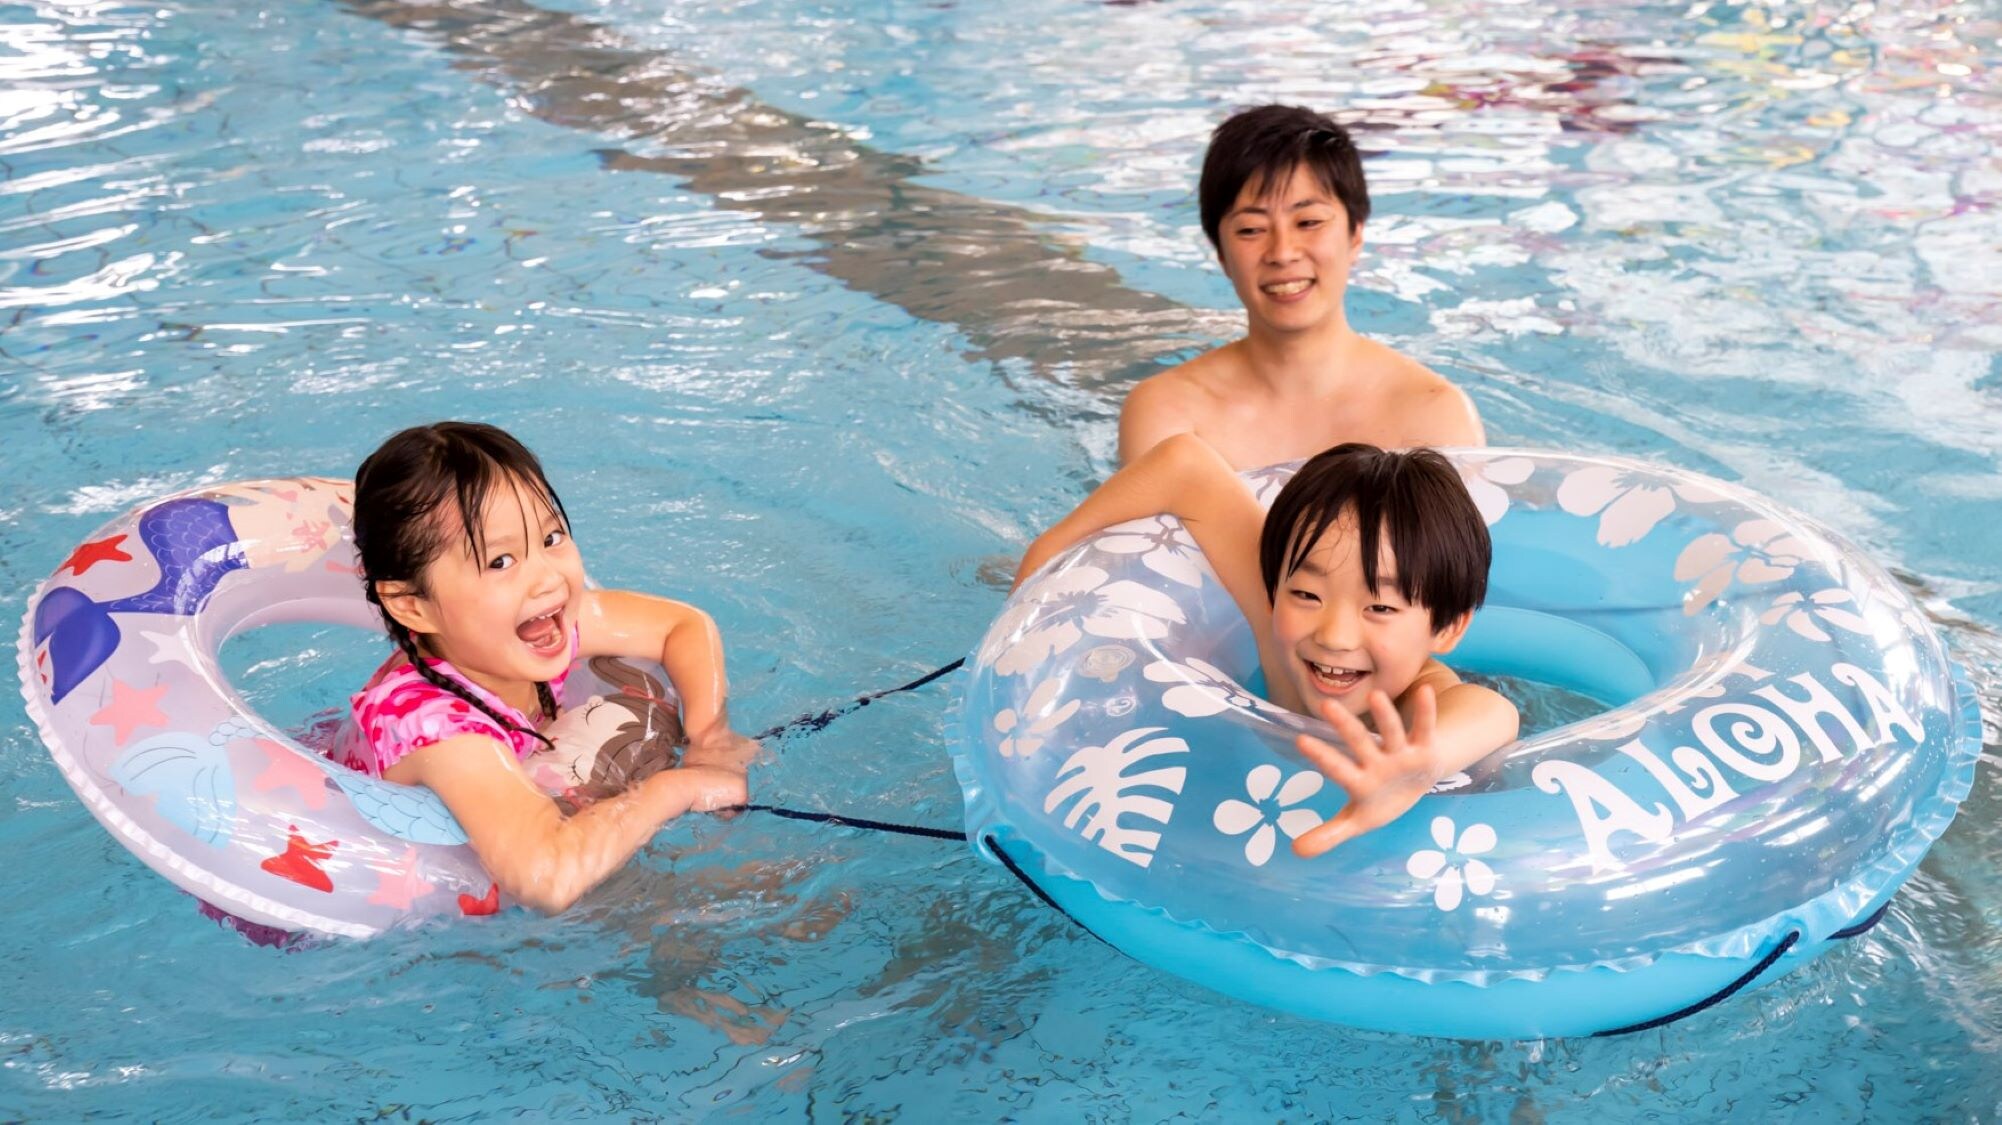 * [Aqua Park (ตัวอย่าง)] Aqua pool เต็มไปด้วยความสนุกสนาน♪